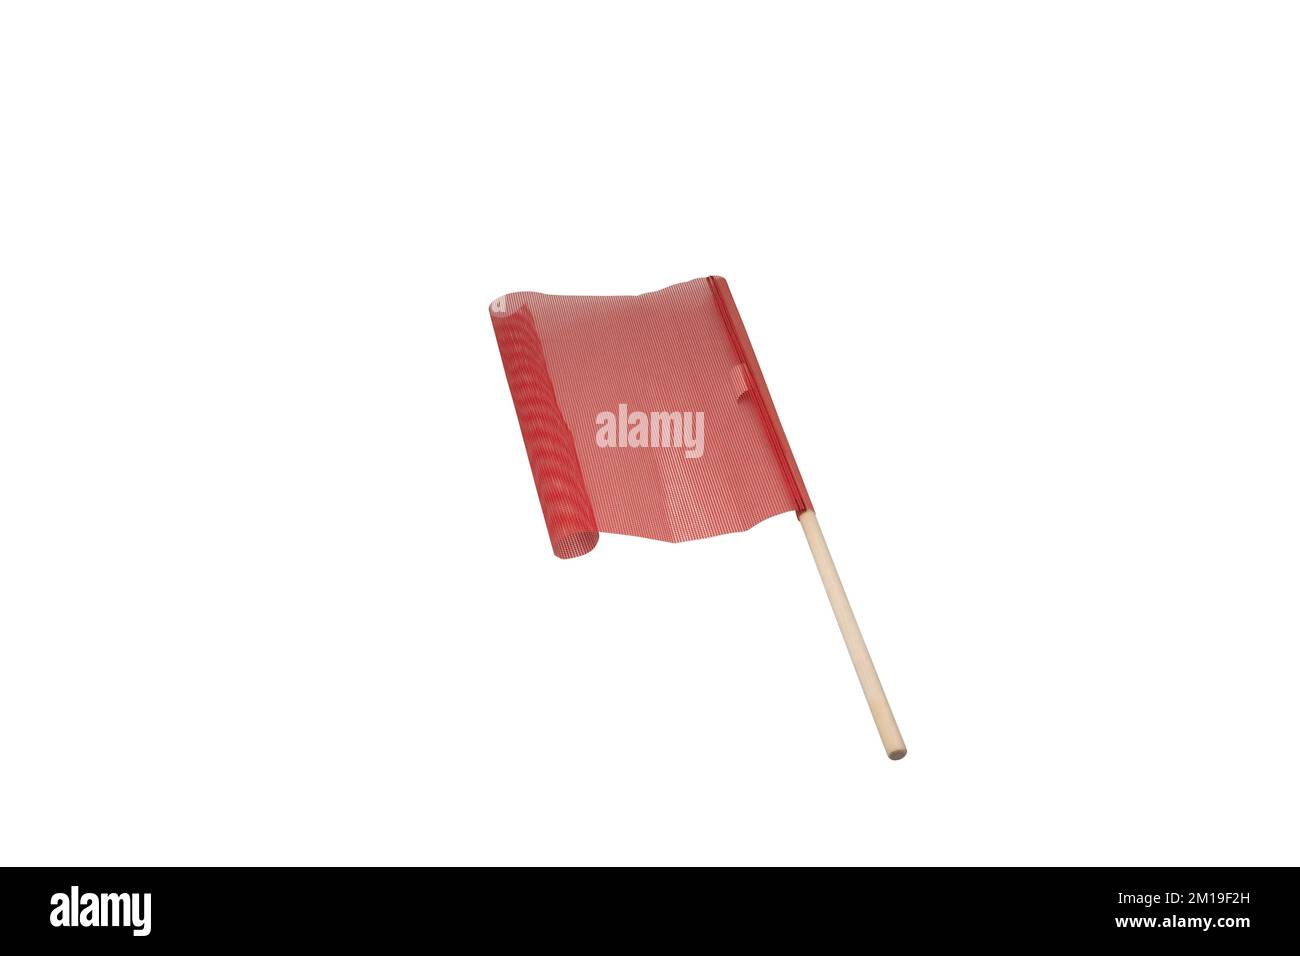 Un drapeau rouge de cargaison isolé sur un fond blanc, un concept d'avertissement Banque D'Images